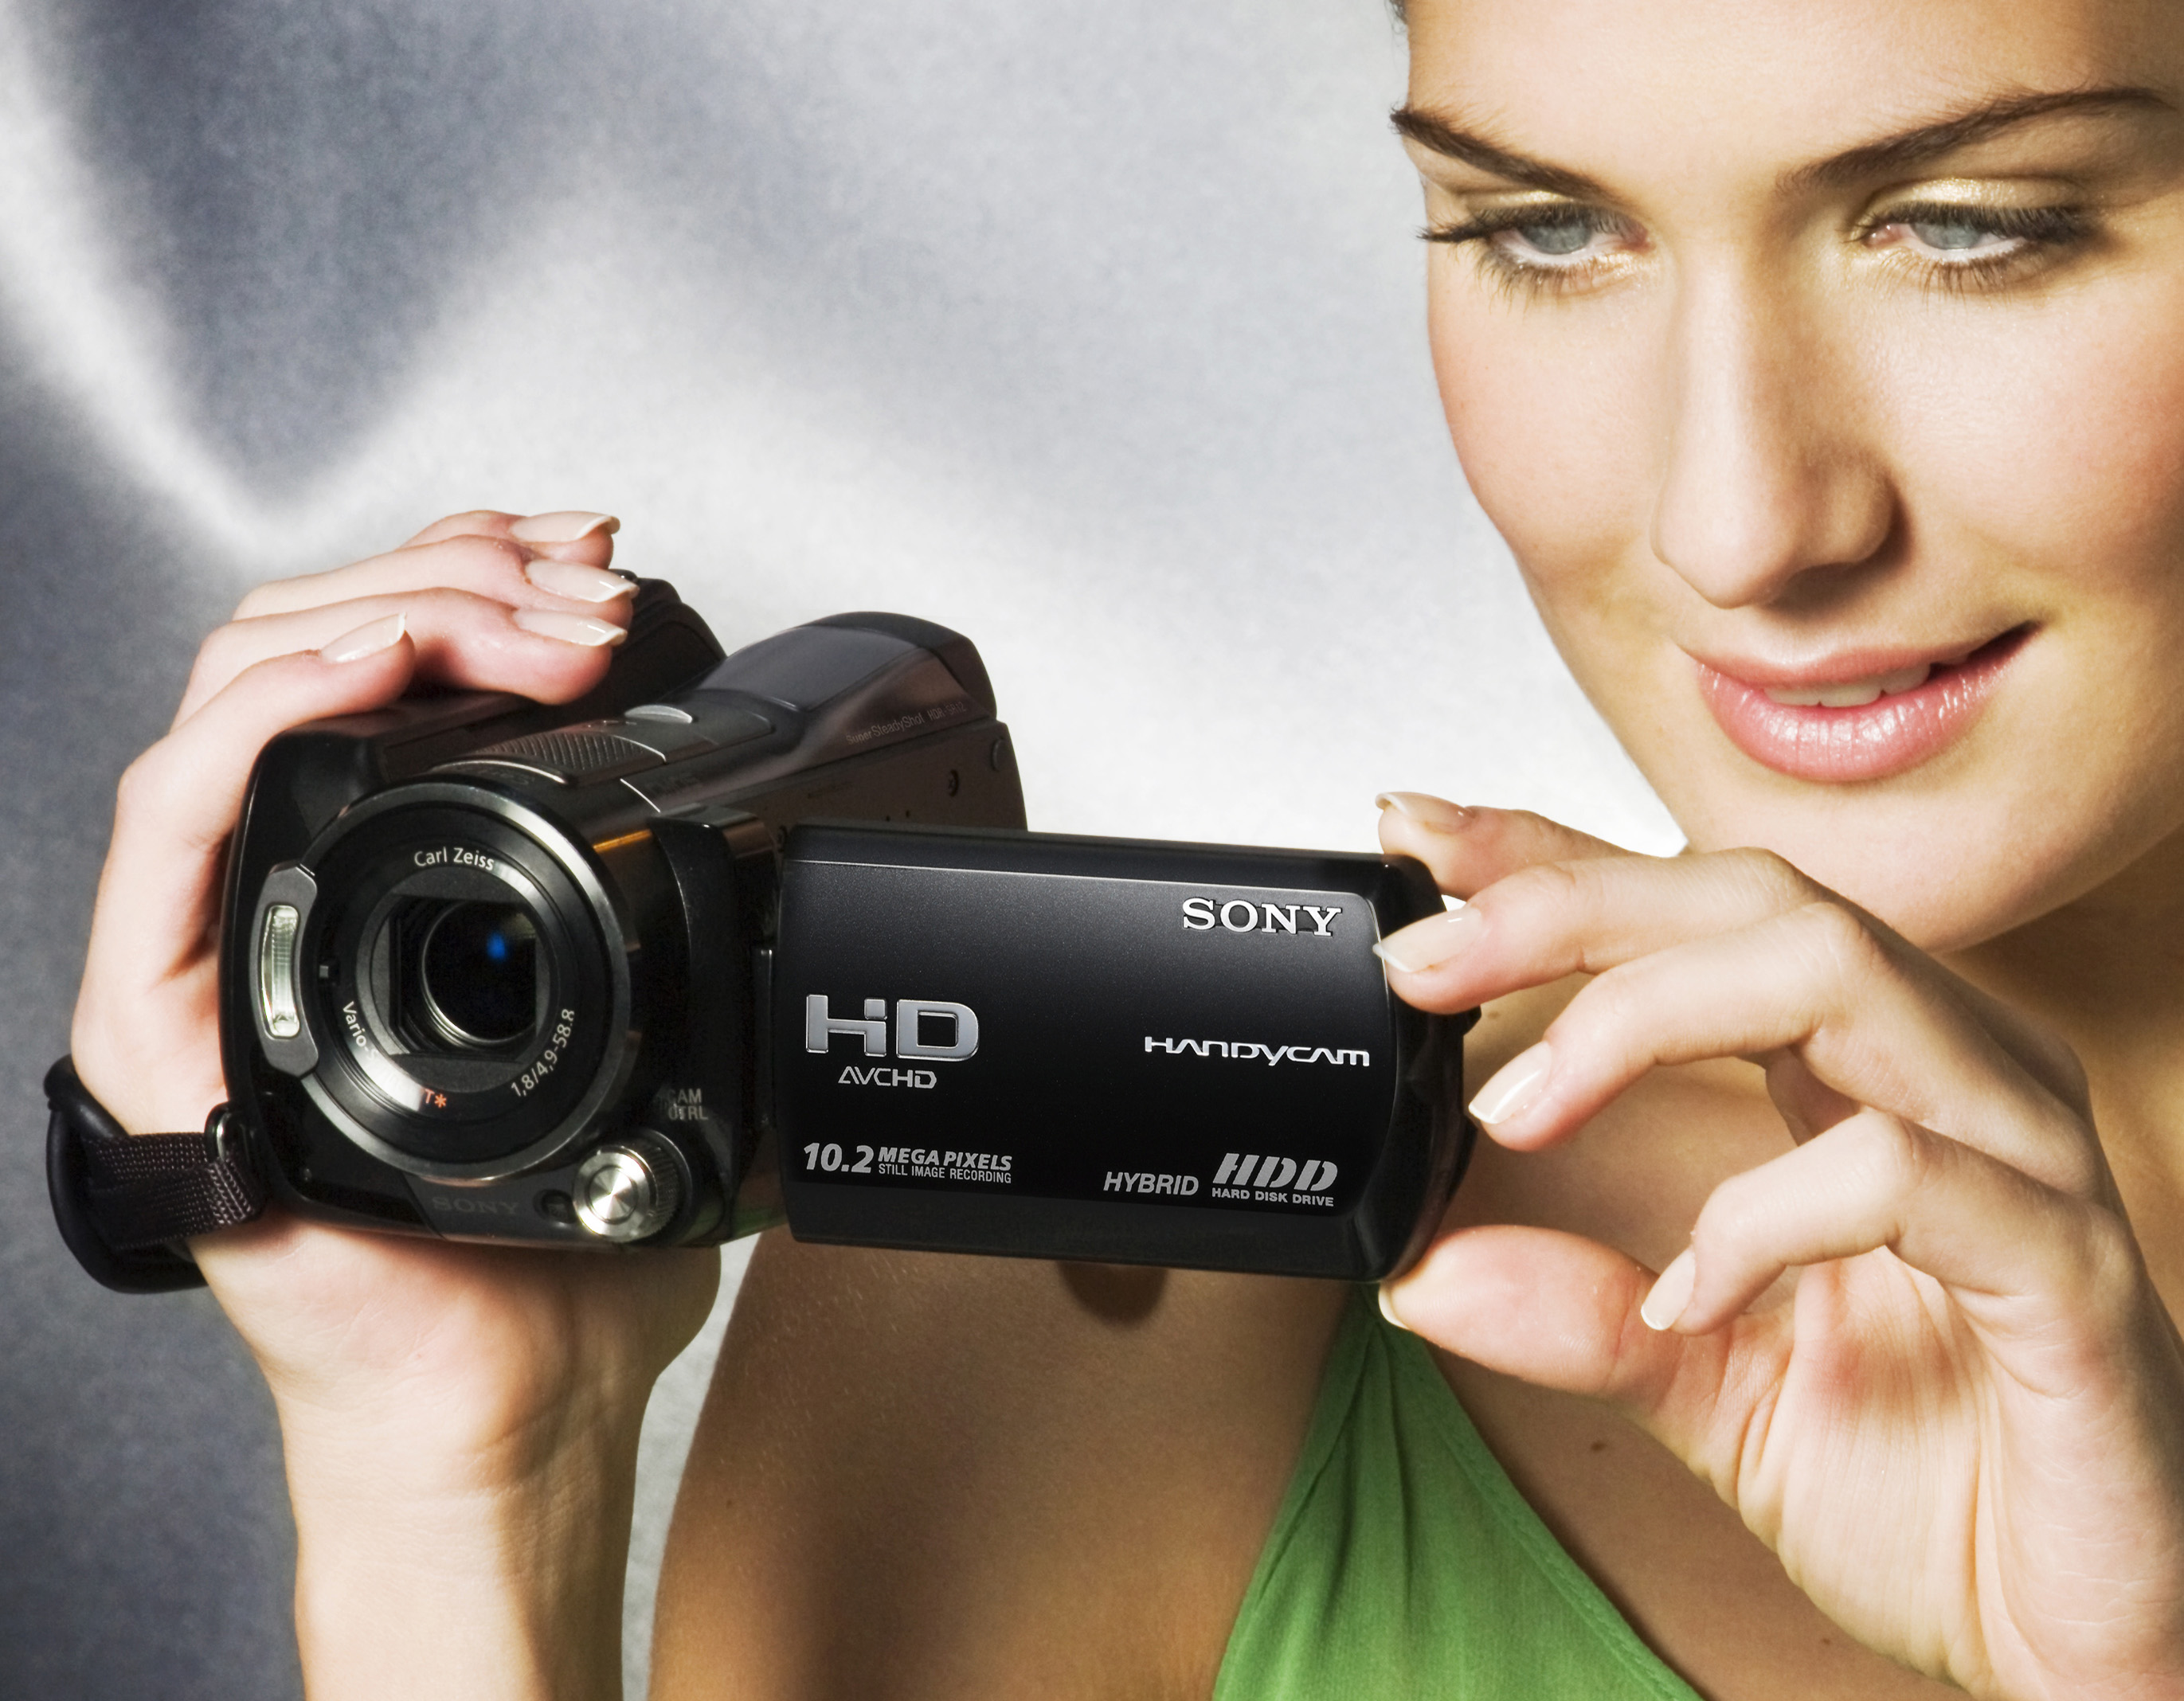 Видео хочу купить. Сони хендикам камера. Sony Handycam съёмка. Видеокамера в руке. Sony фотоаппарат для видеосъемки.